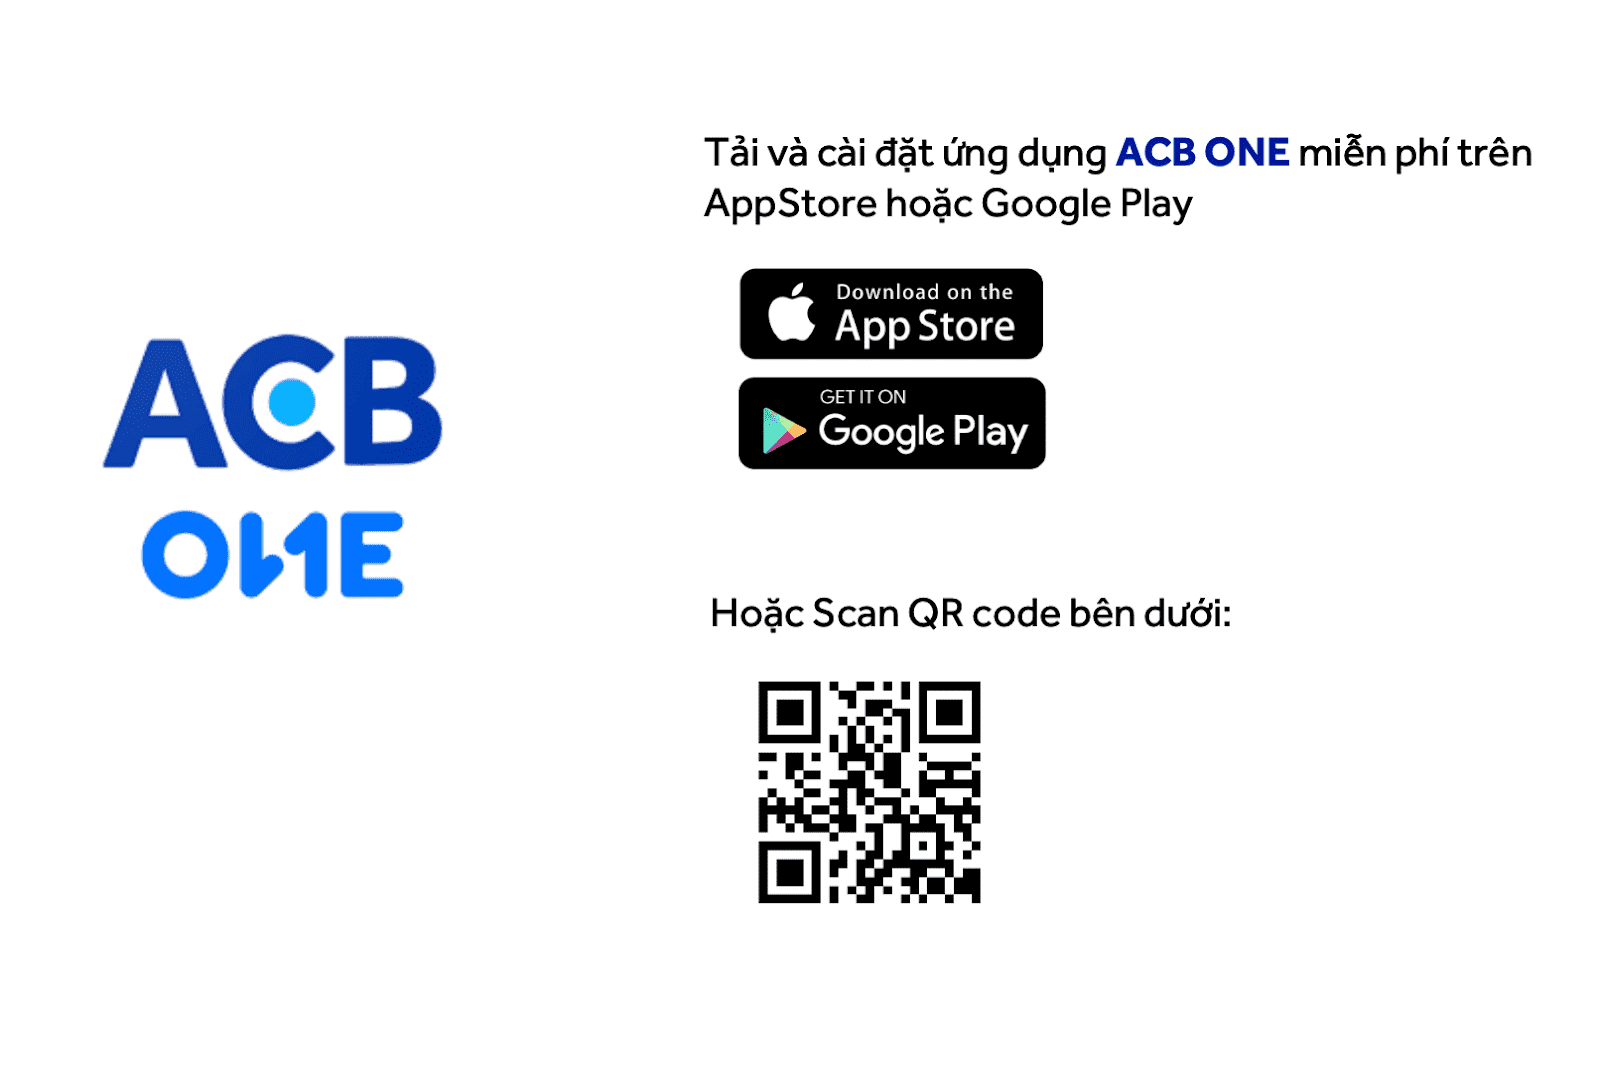 Tải/ cập nhật ứng dụng ACB ONE